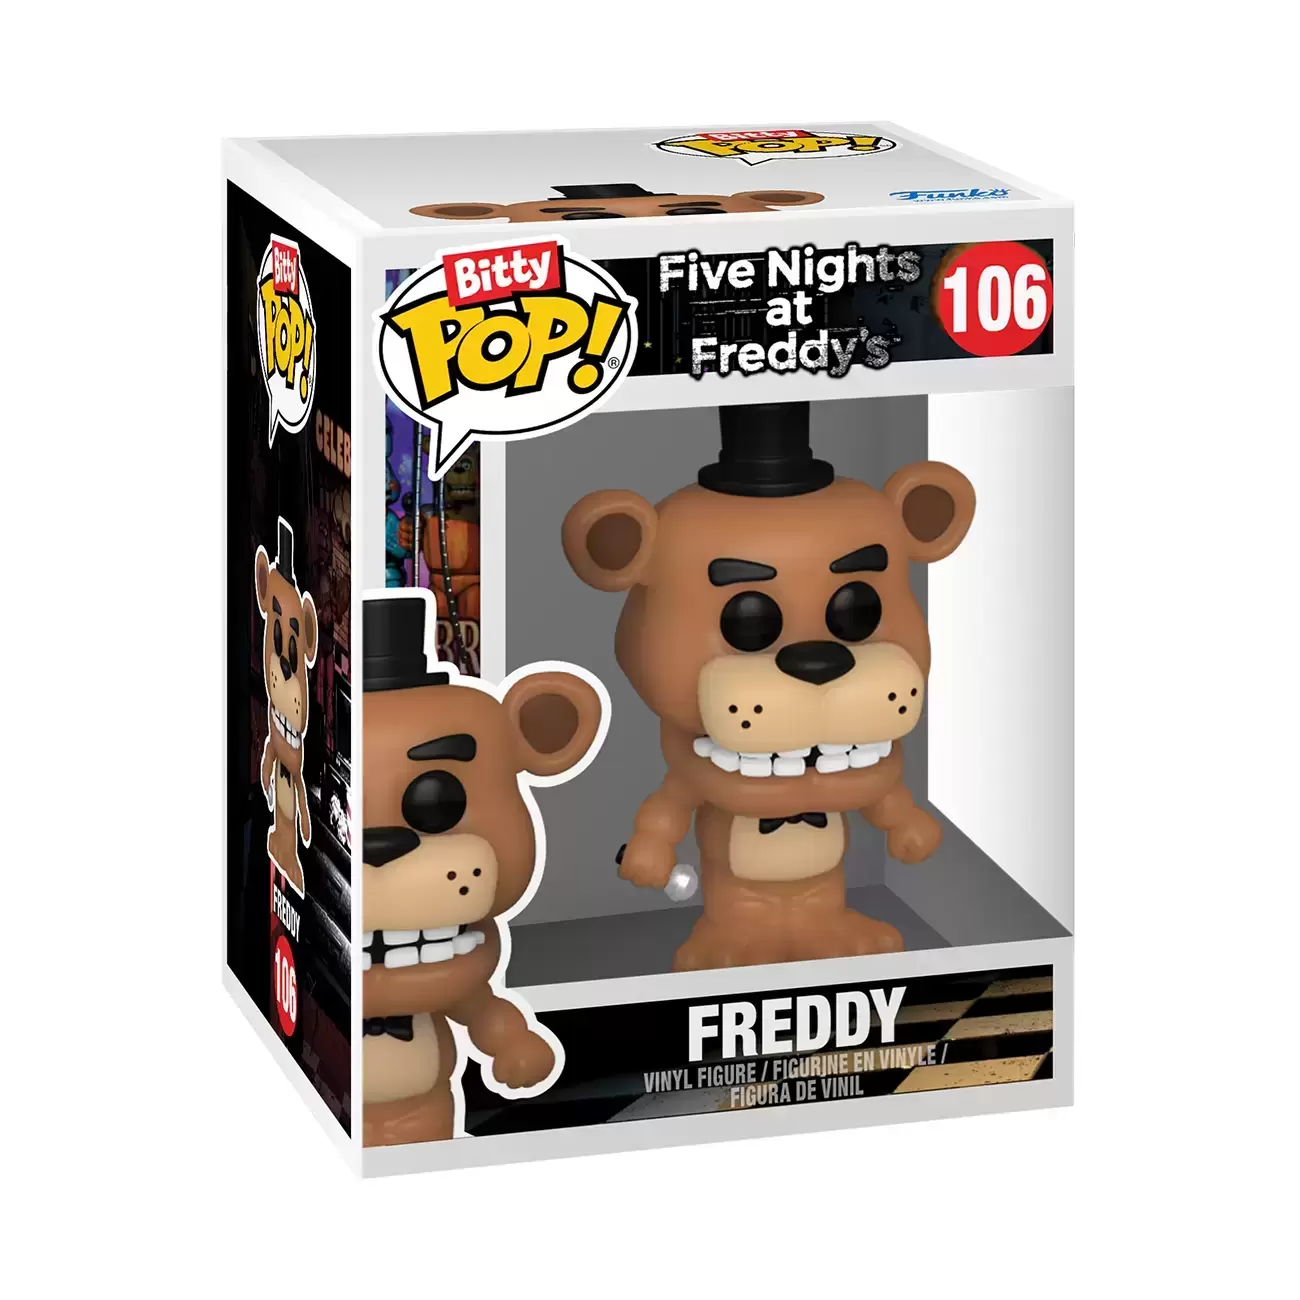 Funko Pop figure! Five Nights at Freddy's Freddy model 106